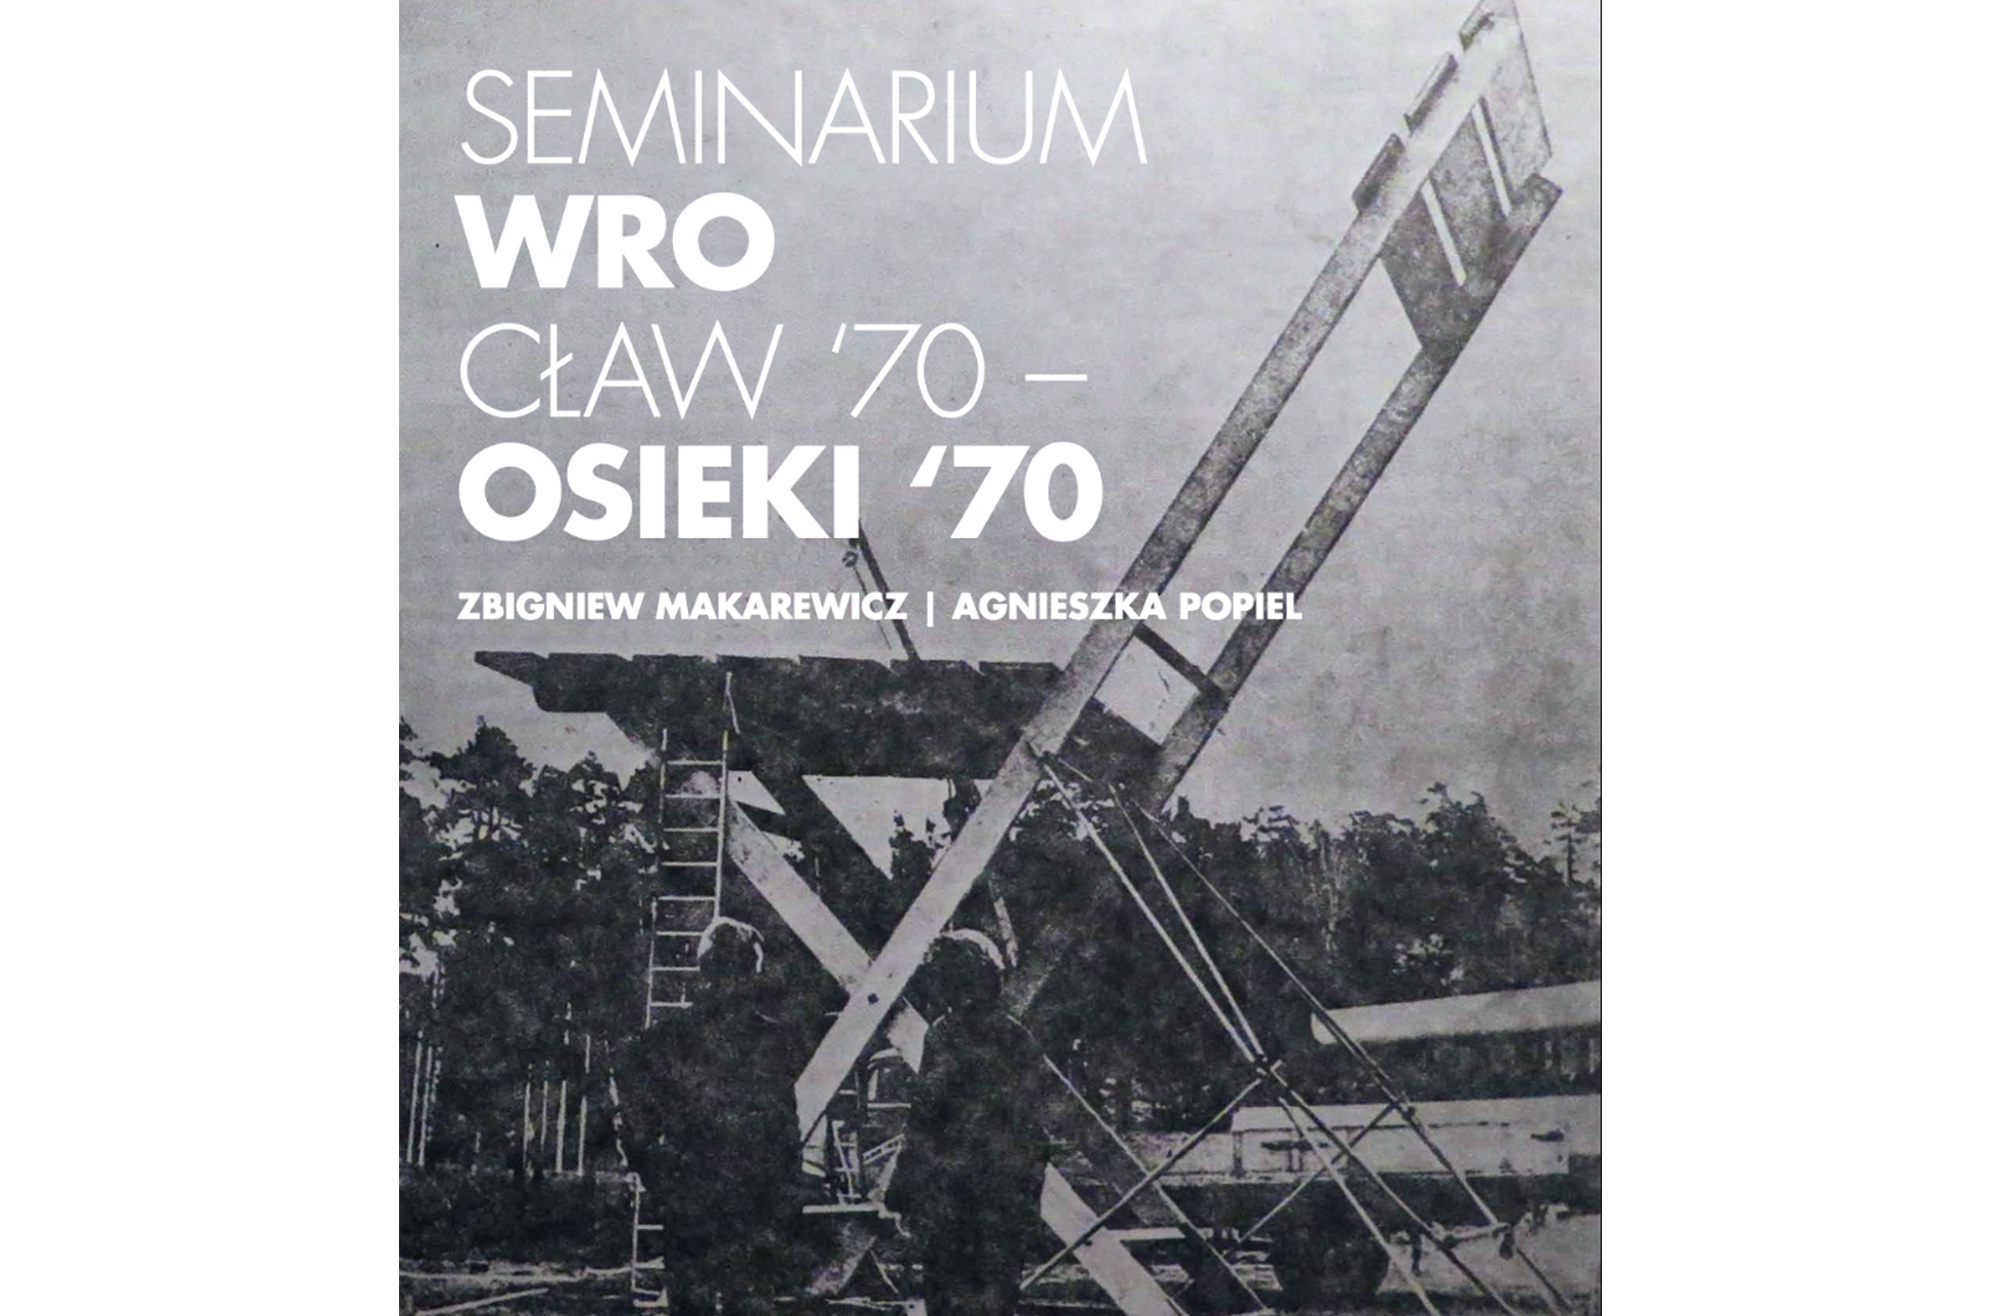 Seminarium Wrocław ‘70 – Osieki ‘70